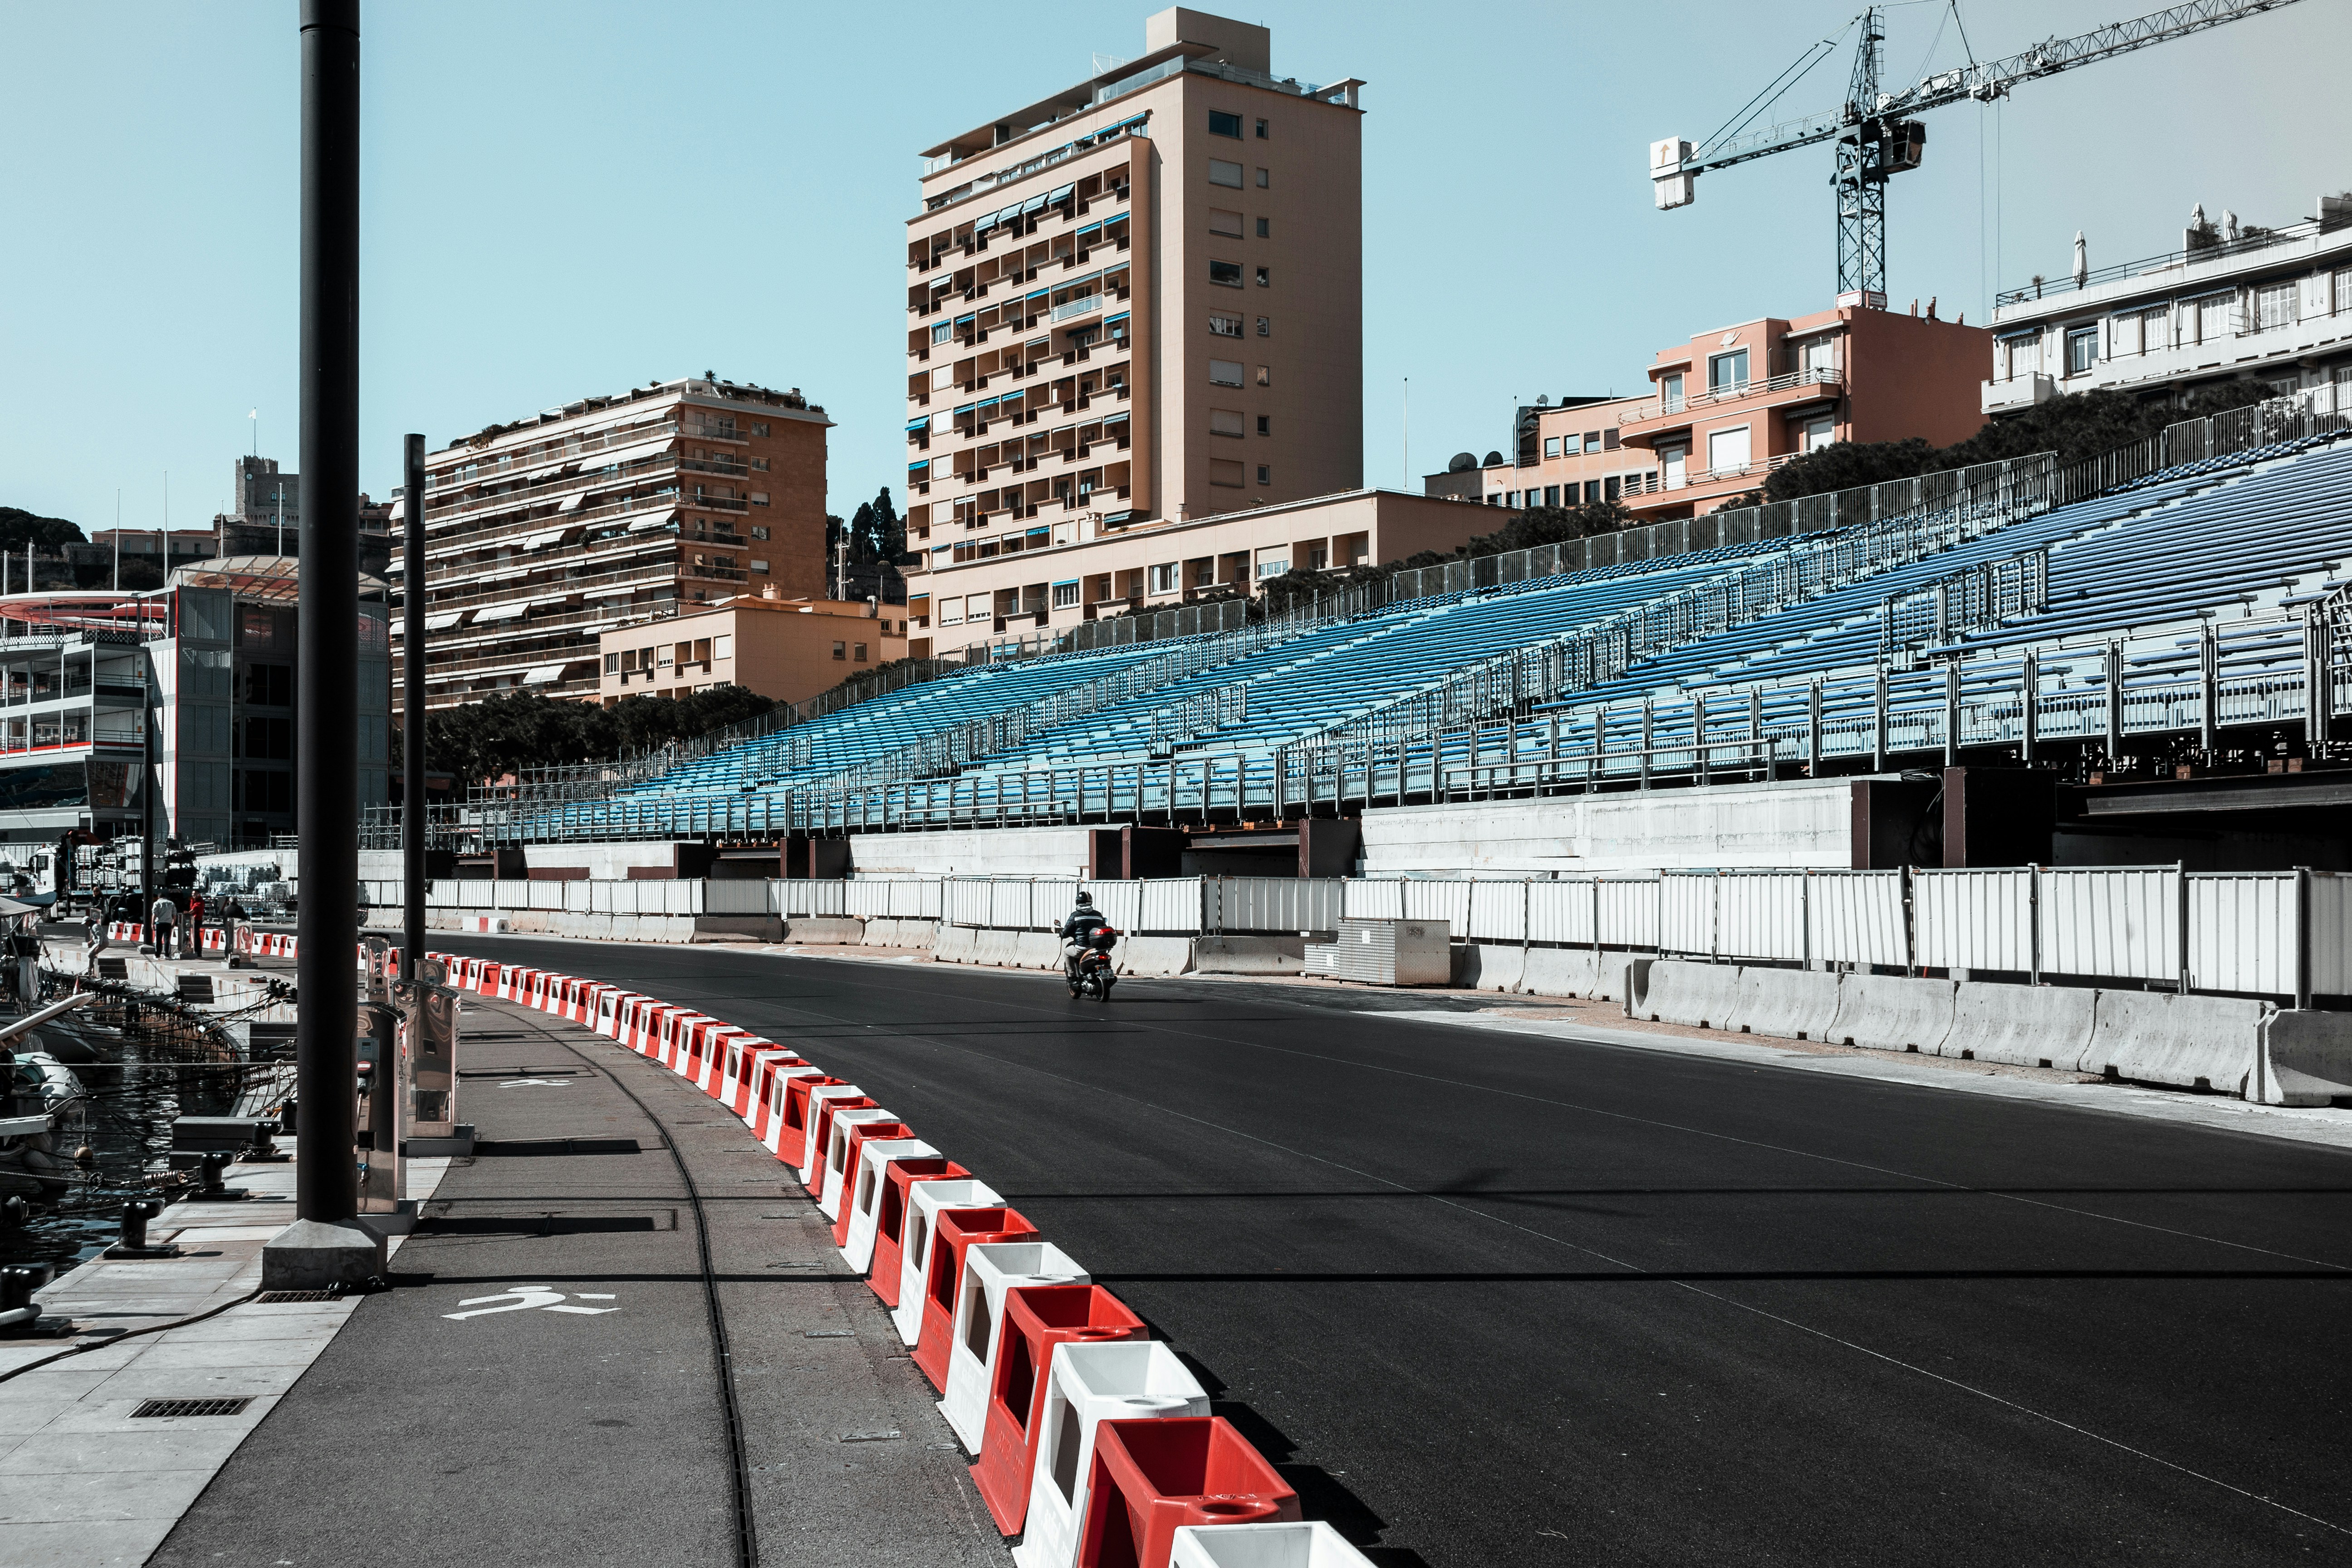 Empty grandstand on f1 track in Monaco